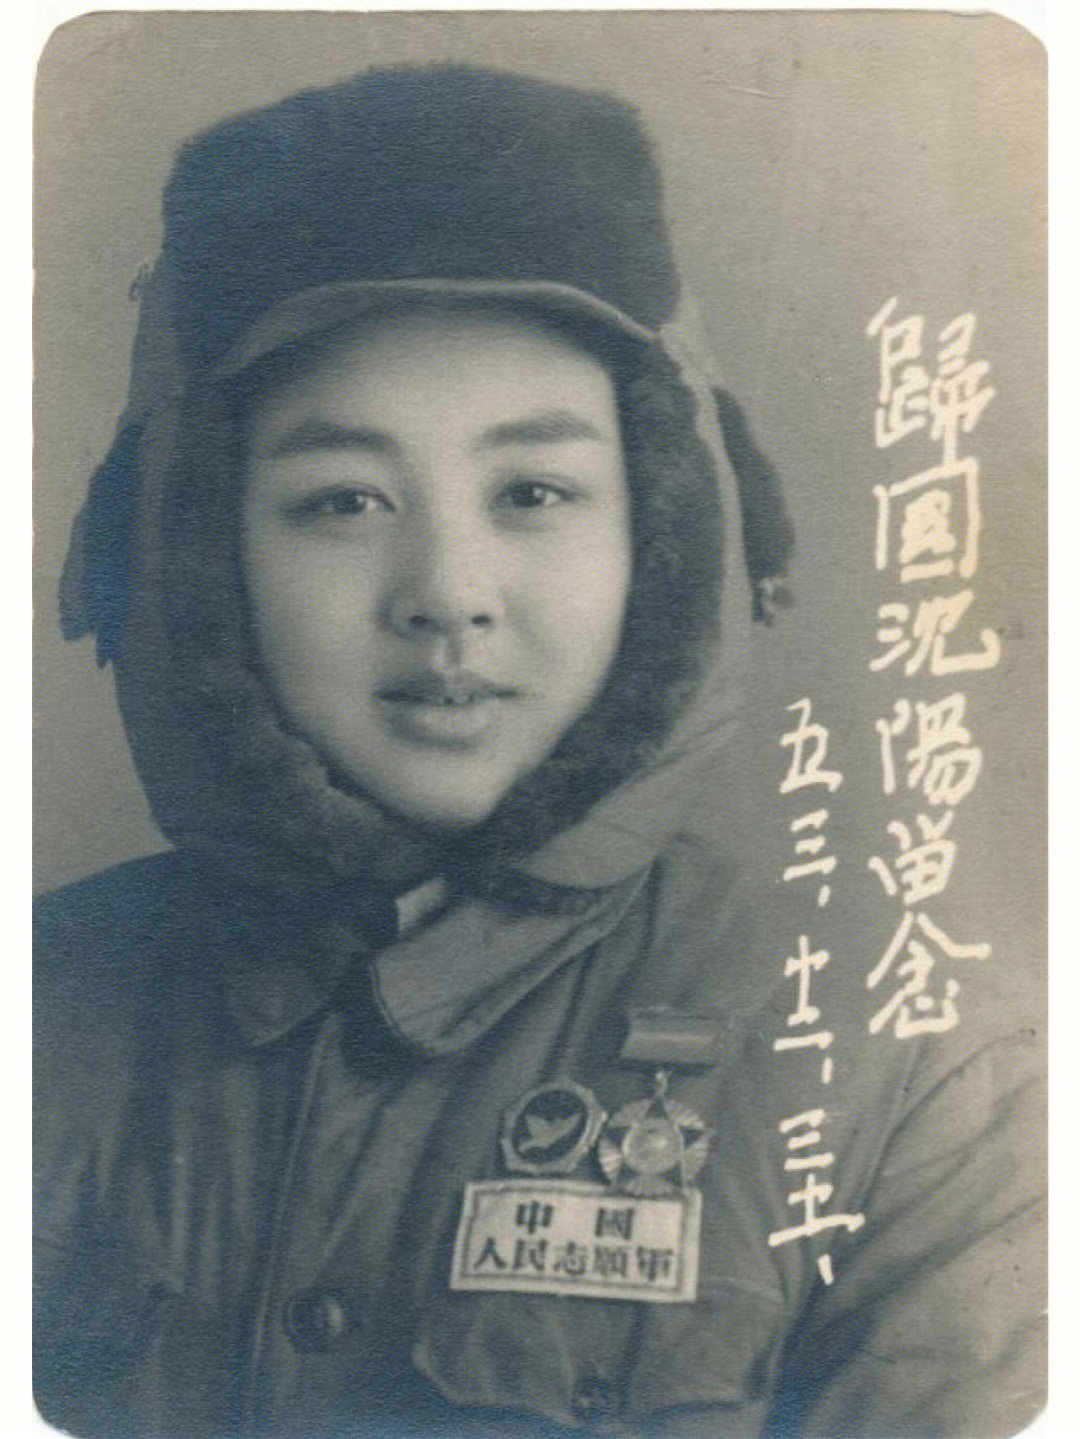 朝鲜人民军文工团图片